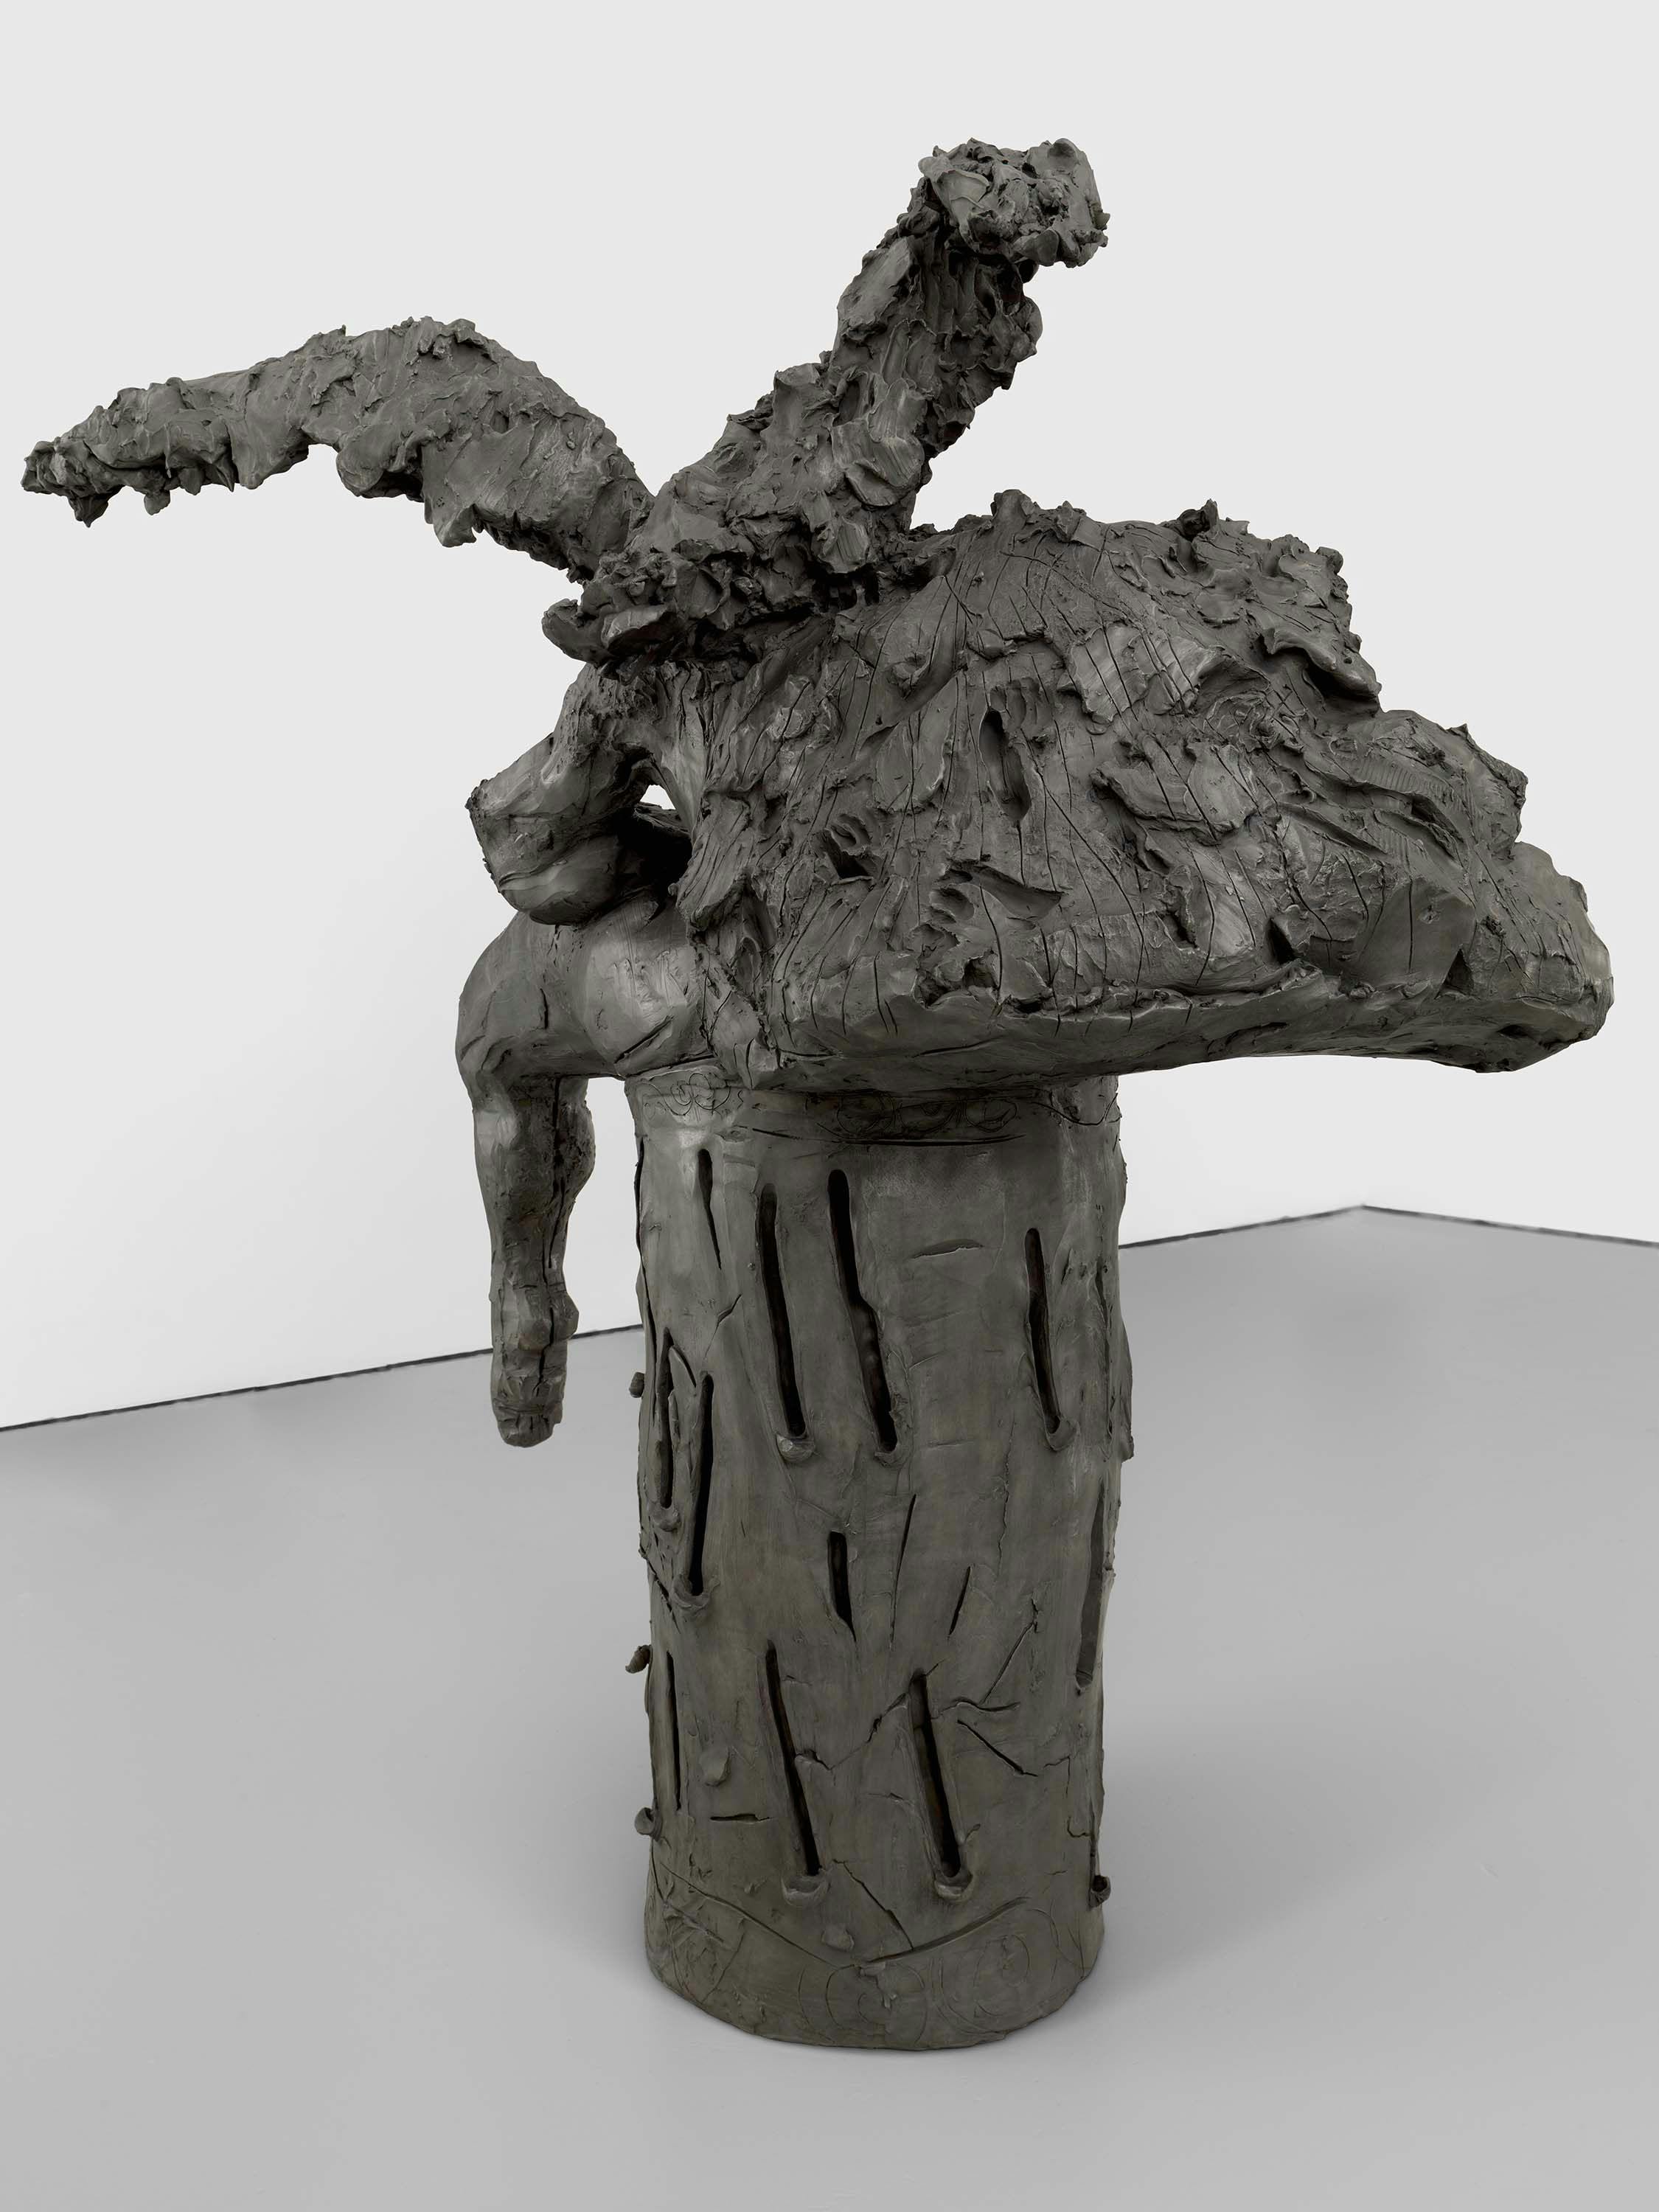 A sculpture by Dana Schutz, titled Odalisque, dated 2022.